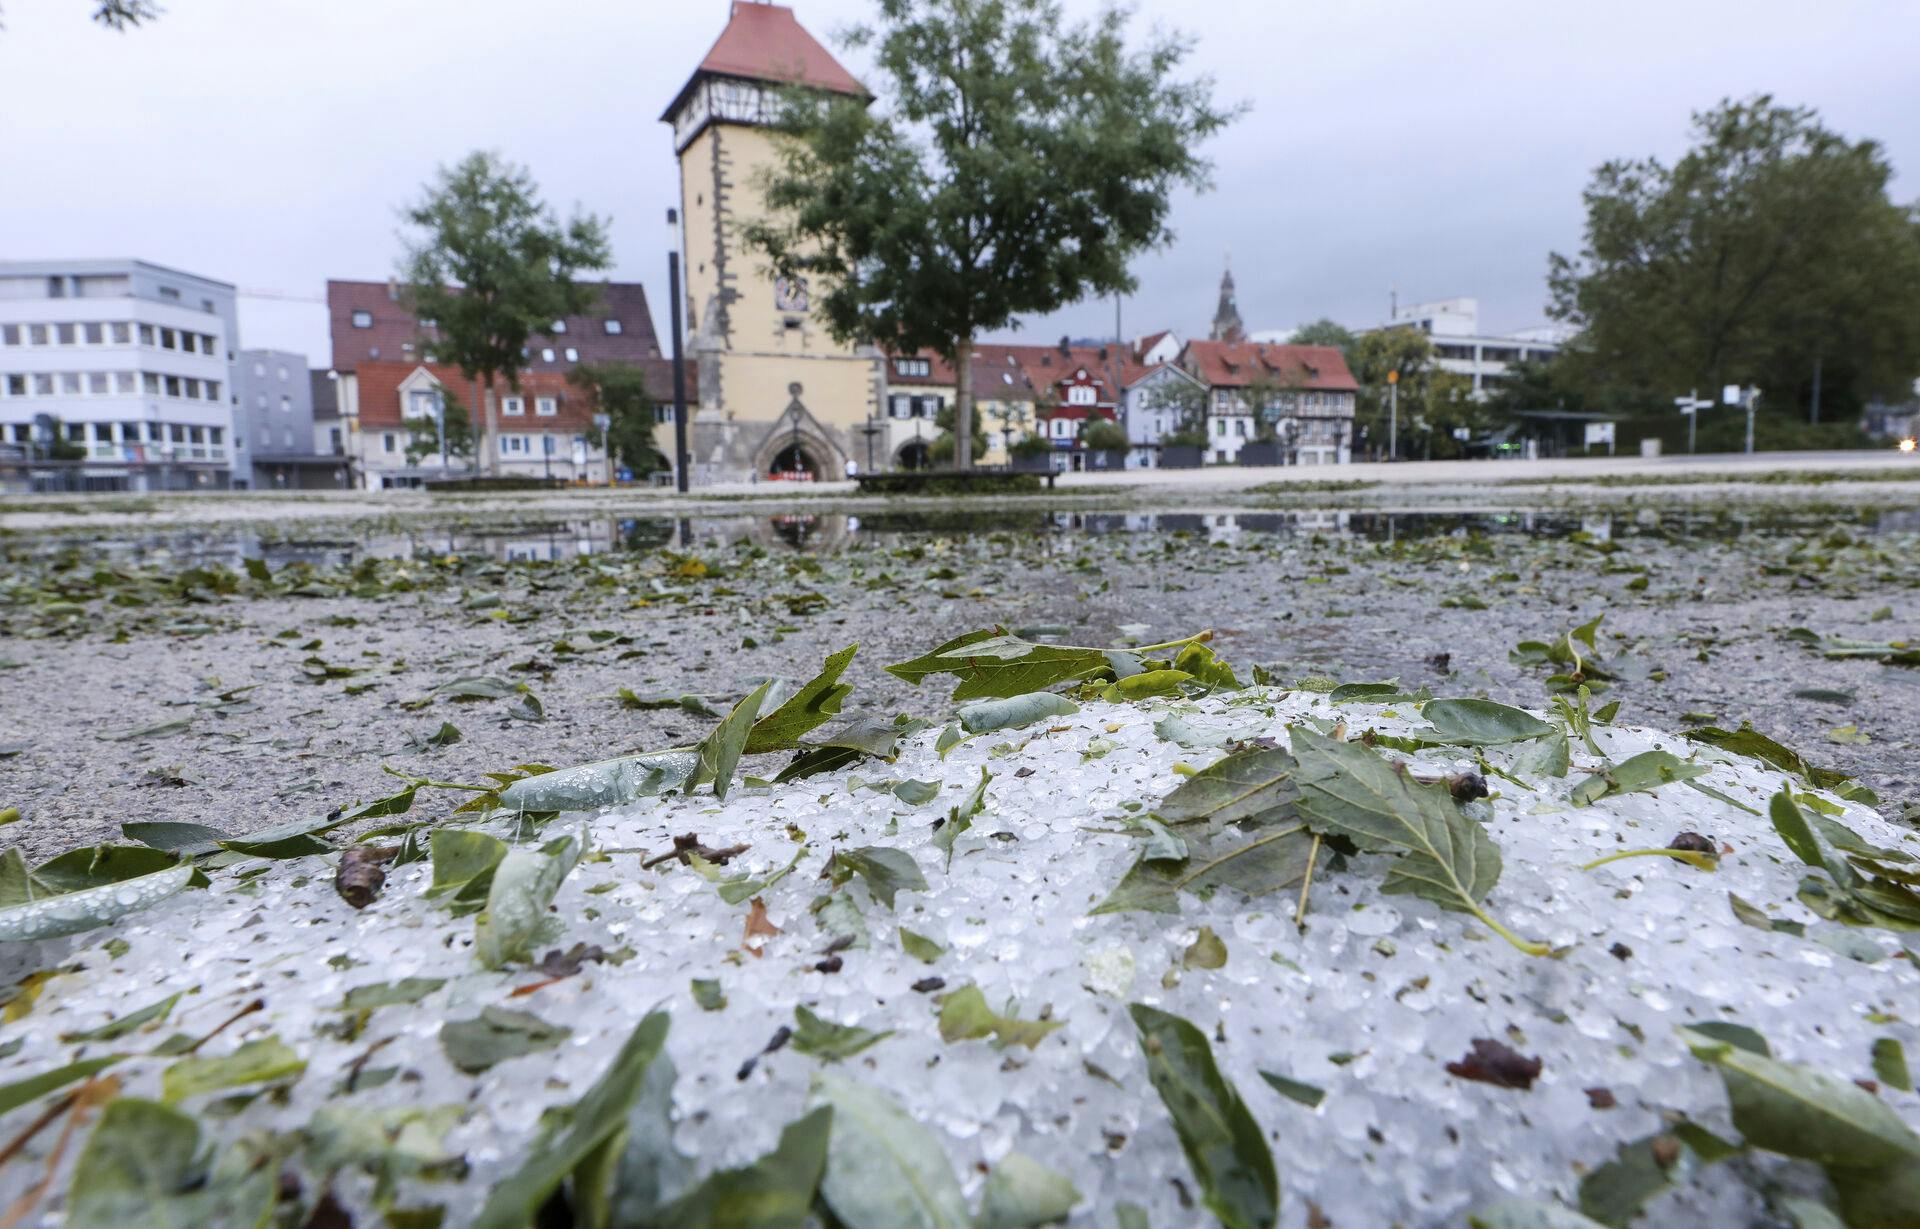 Europa er ramt af vildt vejr for tiden. Også her i tyske Reutlingen hvor ren haglstorm har smadret løs på træer, biler og byens ejendomme.